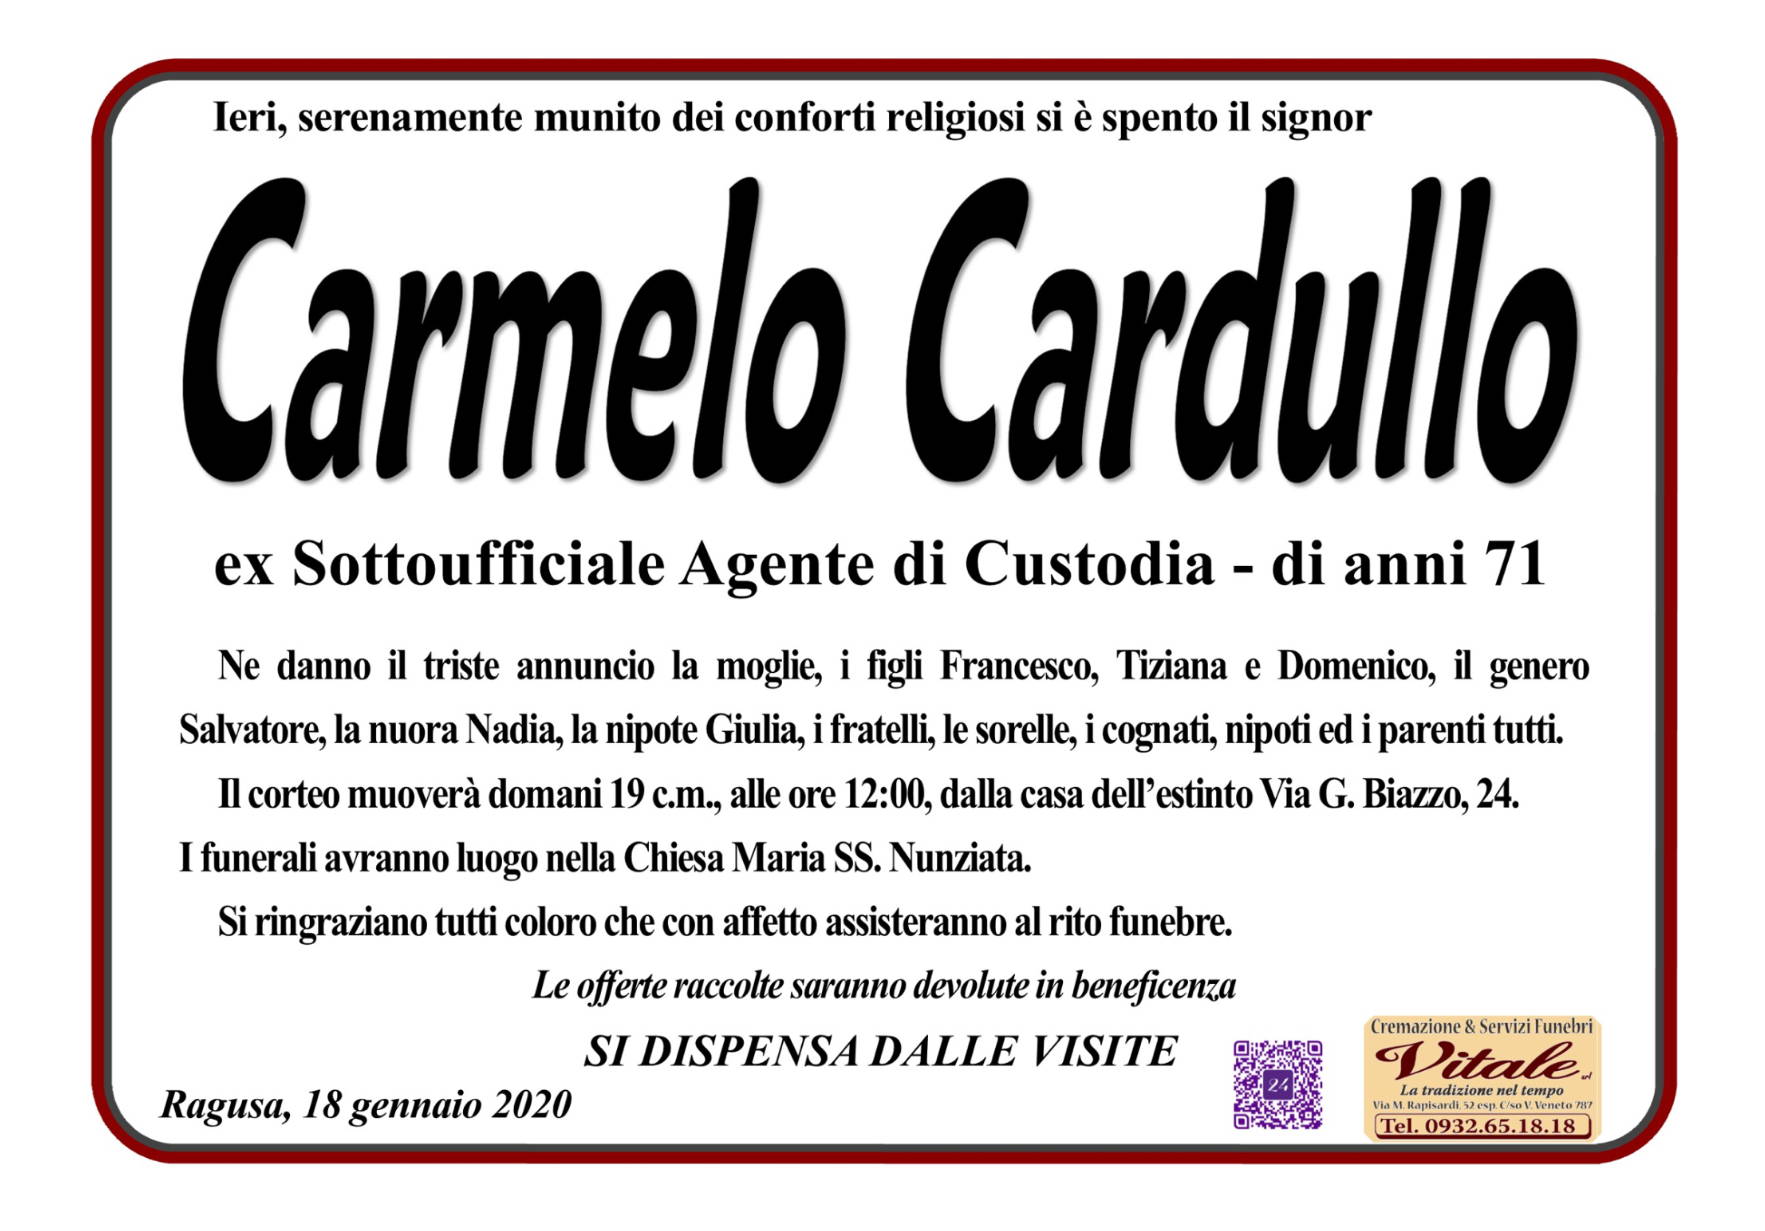 Carmelo Cardullo